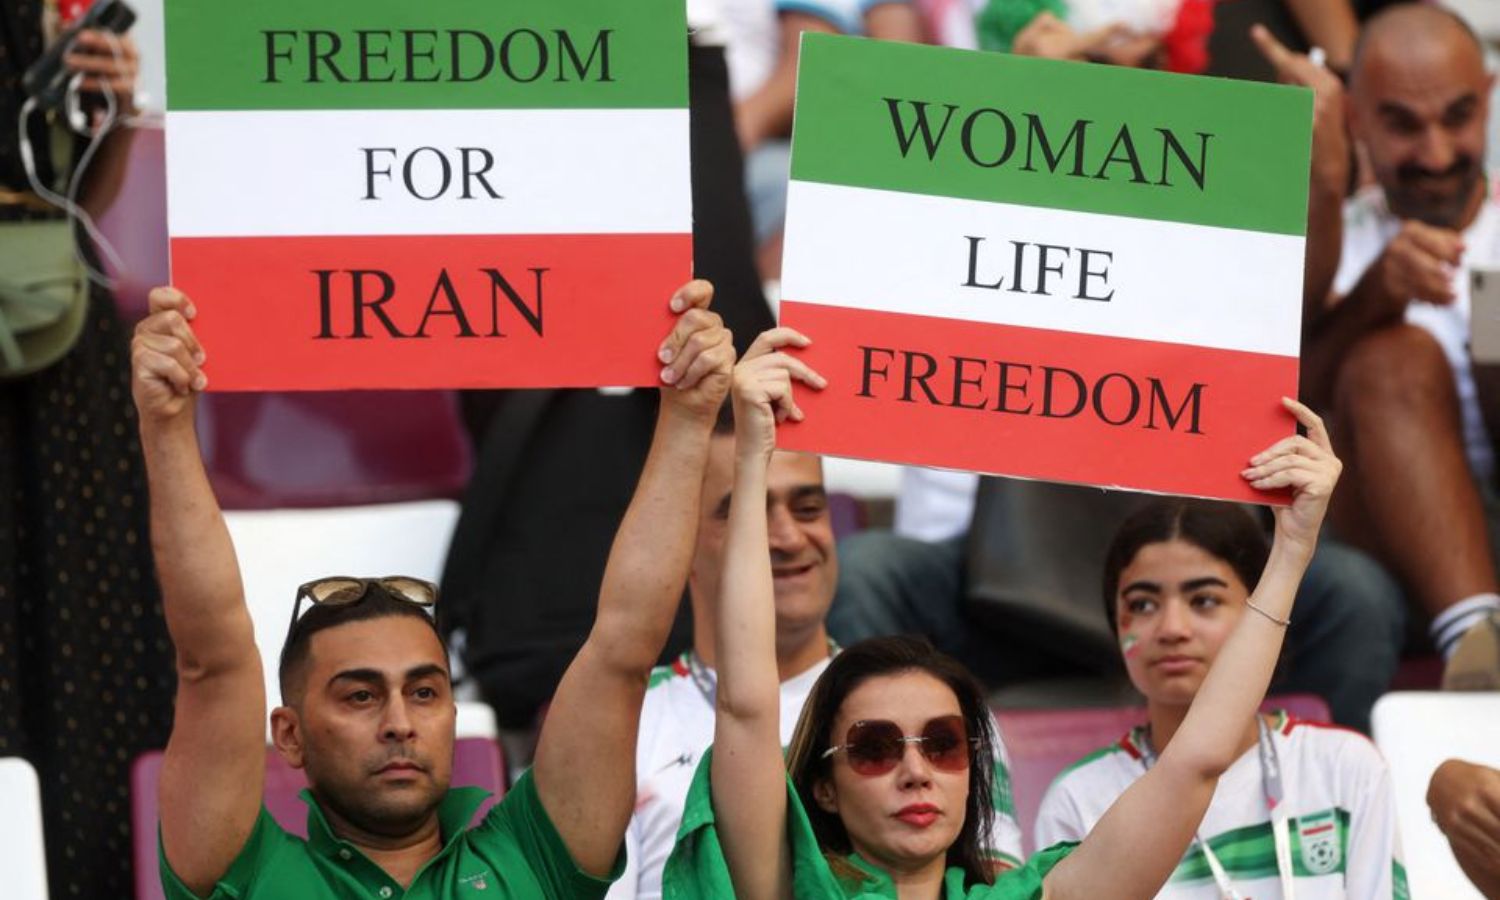 مشجعو منتخب إيران يدعمون فريقهم بشعار "حرية حياة المرأة" خلال مباراة ضد إنجلترا في المجموعة الثانية في كأس العالم لكرة القدم في قطر- 21 من تشرين الثاني 2022 (رويترز)